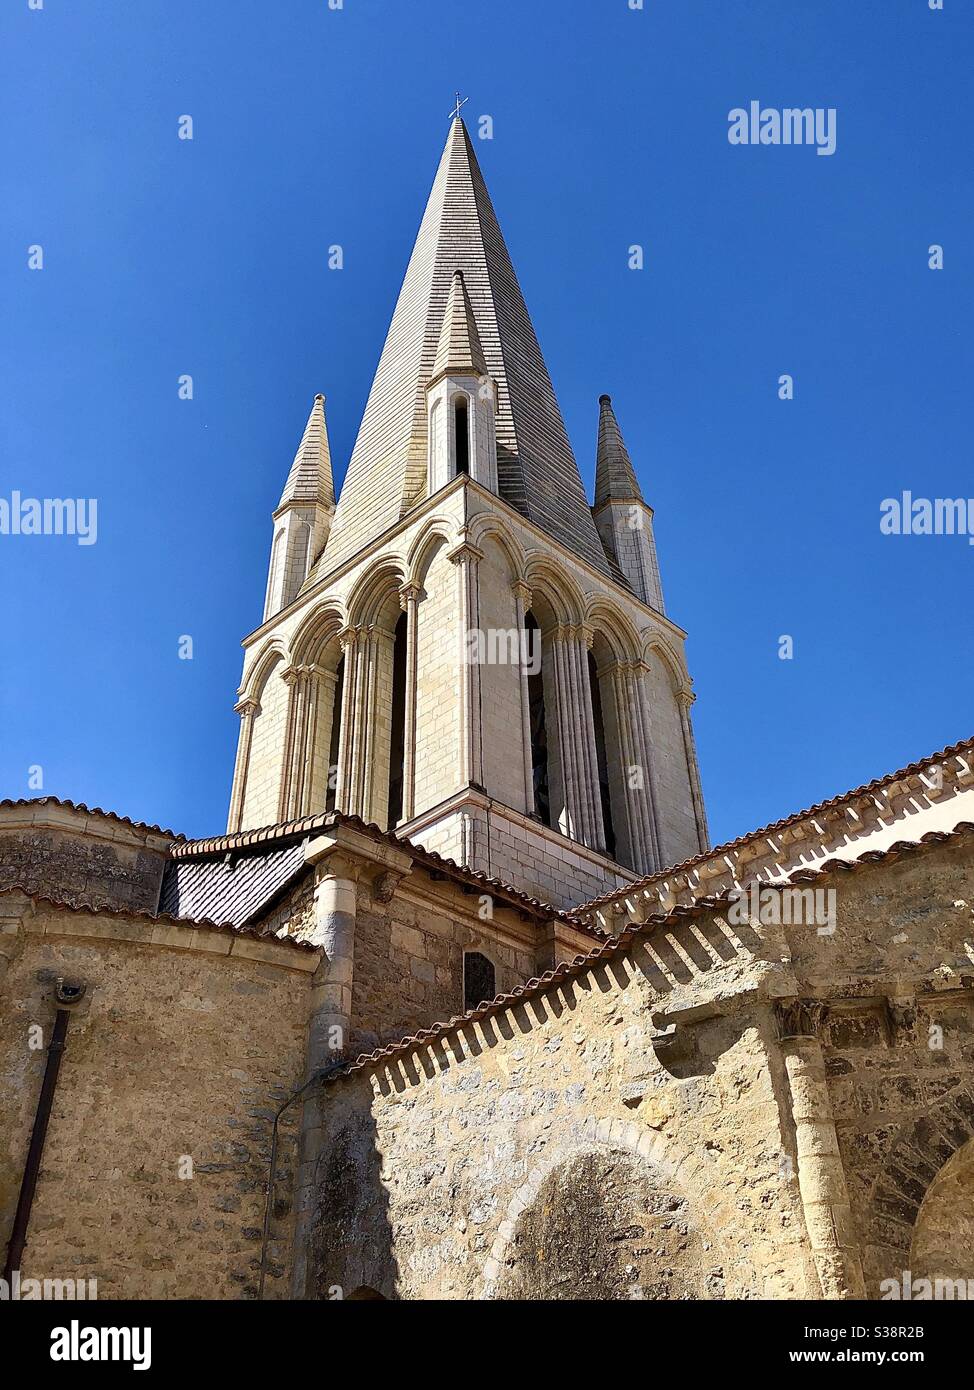 Restaurierte Kirche Saint Pierre aus dem 10. Jahrhundert in Airvault, Deux-Sevres, Frankreich, auf dem Pilgerweg nach Santiago de Compostela in Spanien. Stockfoto